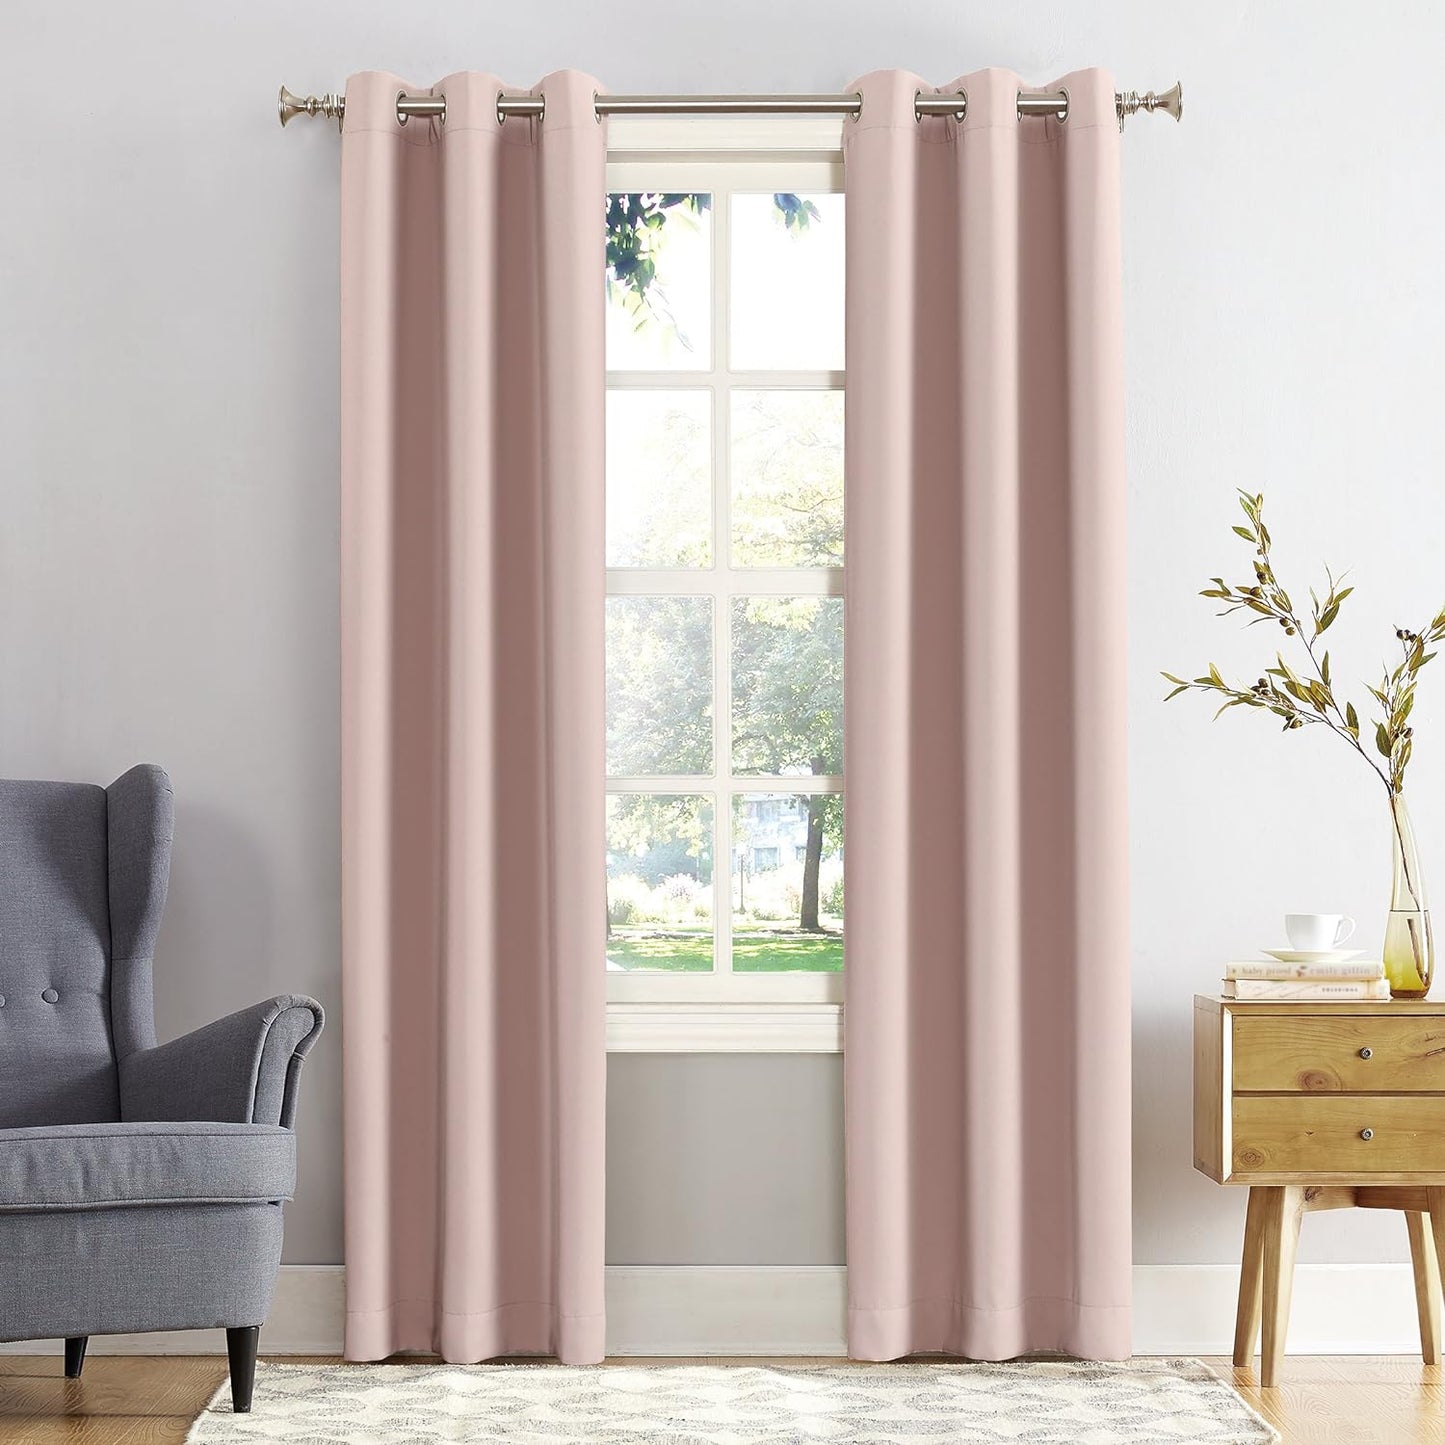 Sun Zero Easton Energy Saving Blackout Grommet Curtain Panel, 40" X 63", Mineral  Sun Zero Blush Pink Curtain Panel 40" X 95"